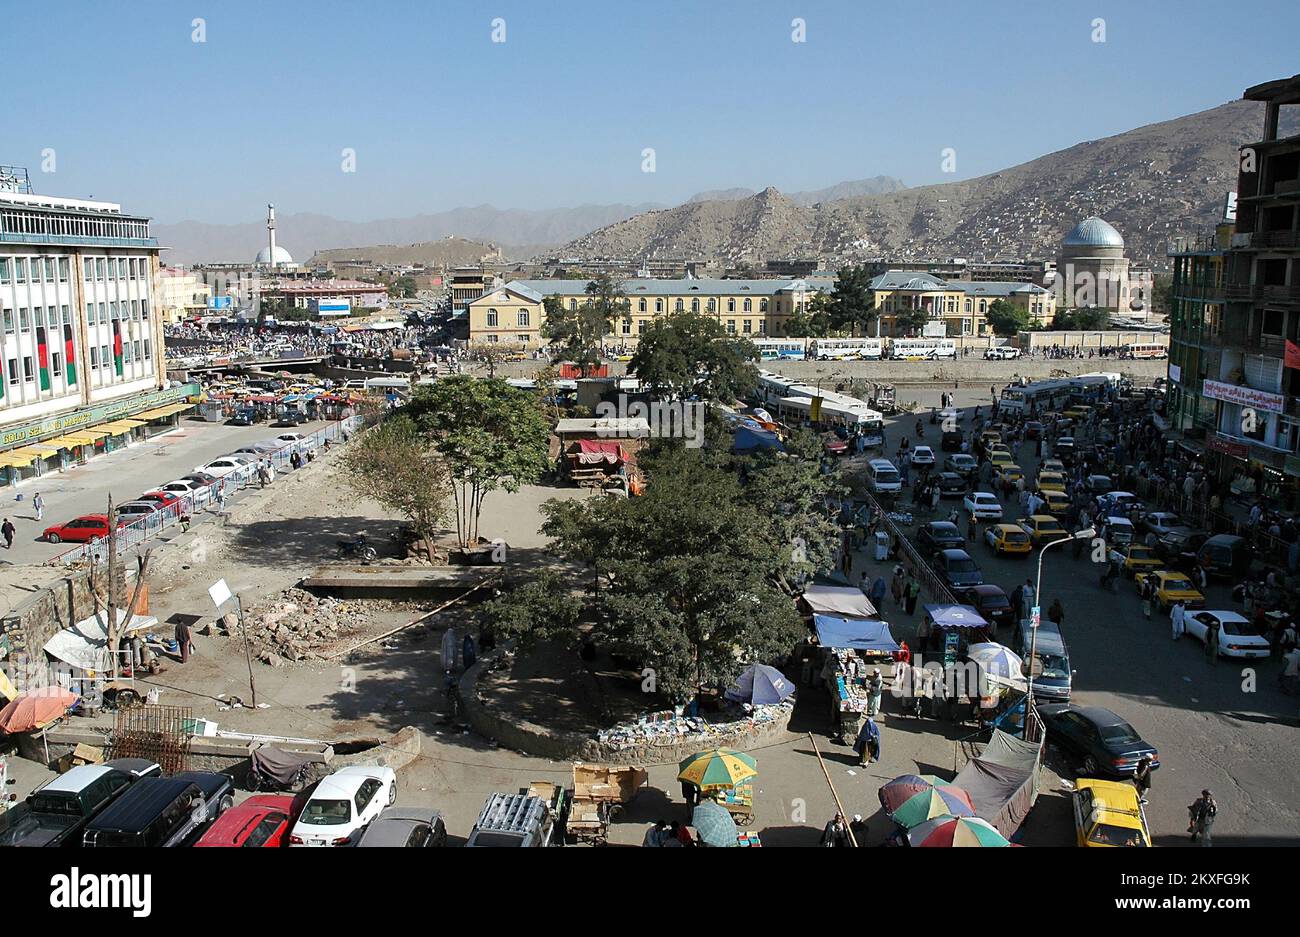 Kaboul / Afghanistan : vue du centre de Kaboul montrant le marché, la circulation, la foule et les collines lointaines. Banque D'Images